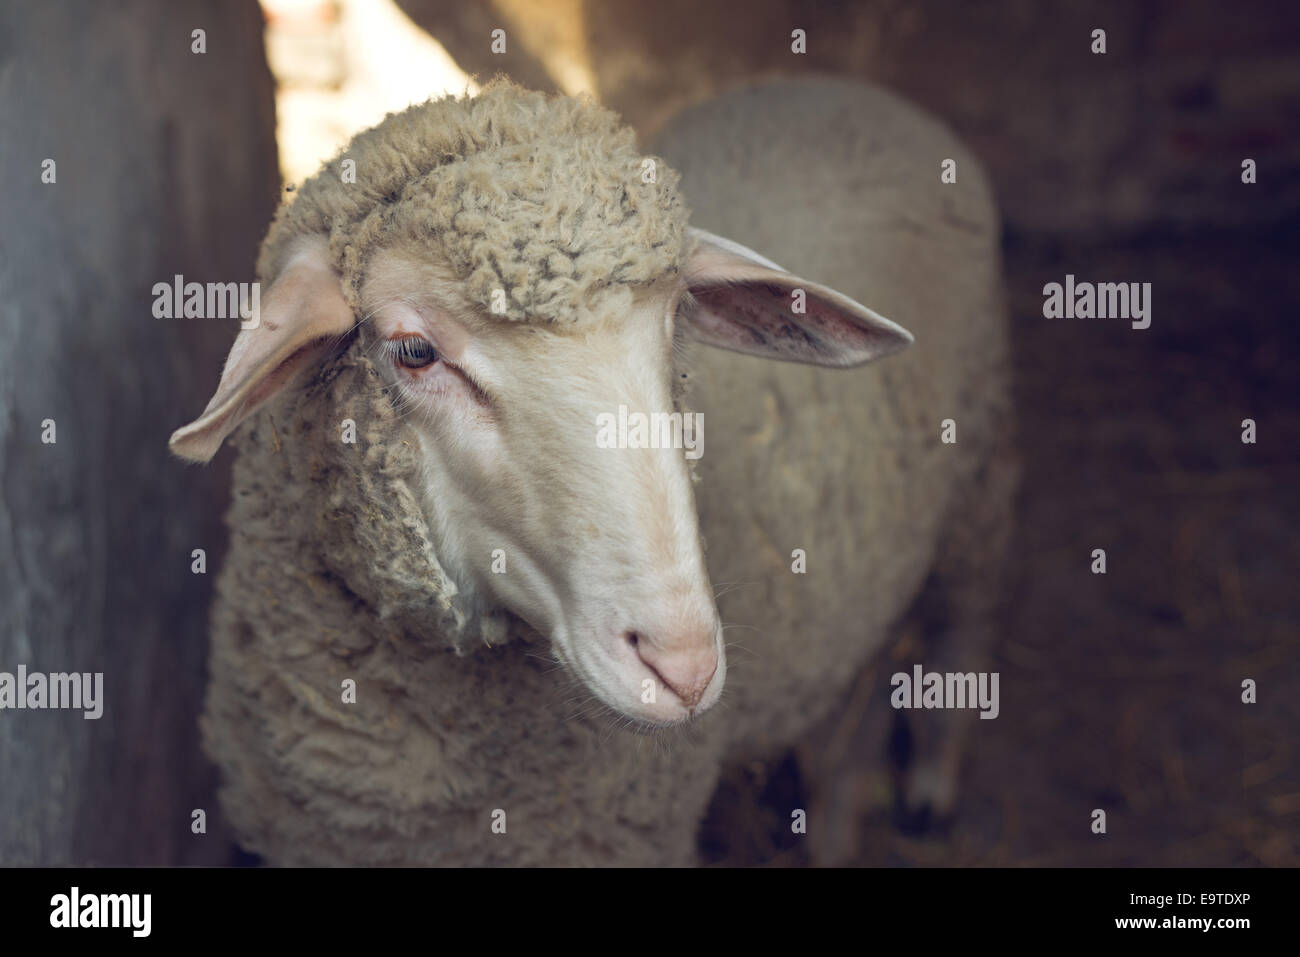 Pecore in un granaio guardando fuori dietro il recinto. Foto Stock